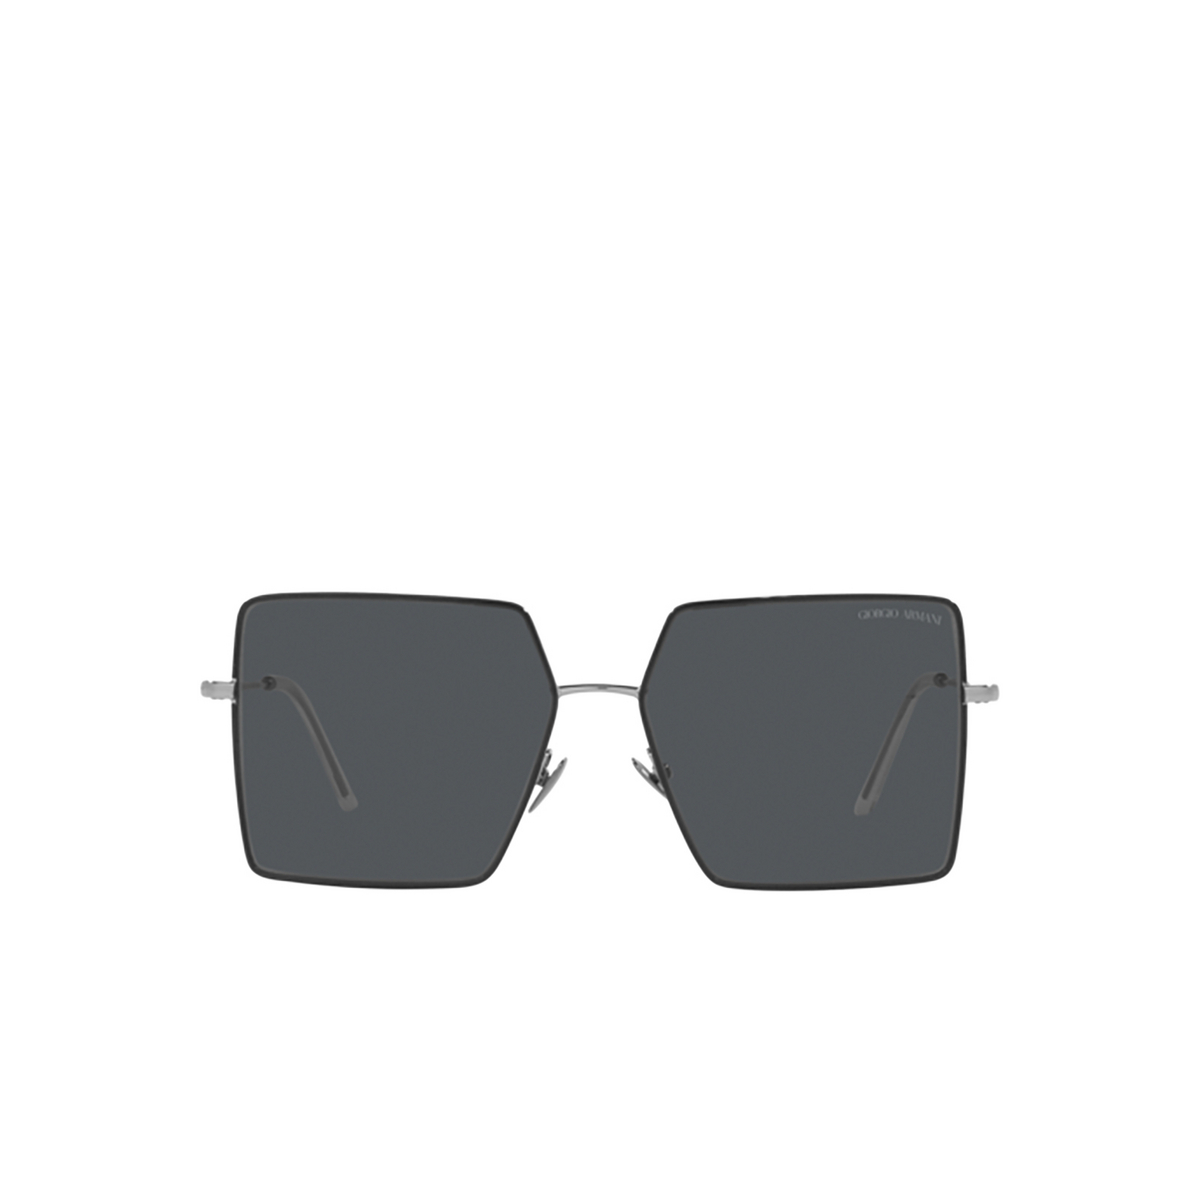 Giorgio Armani AR6143 Sunglasses 301087 Gunmetal / Black - front view